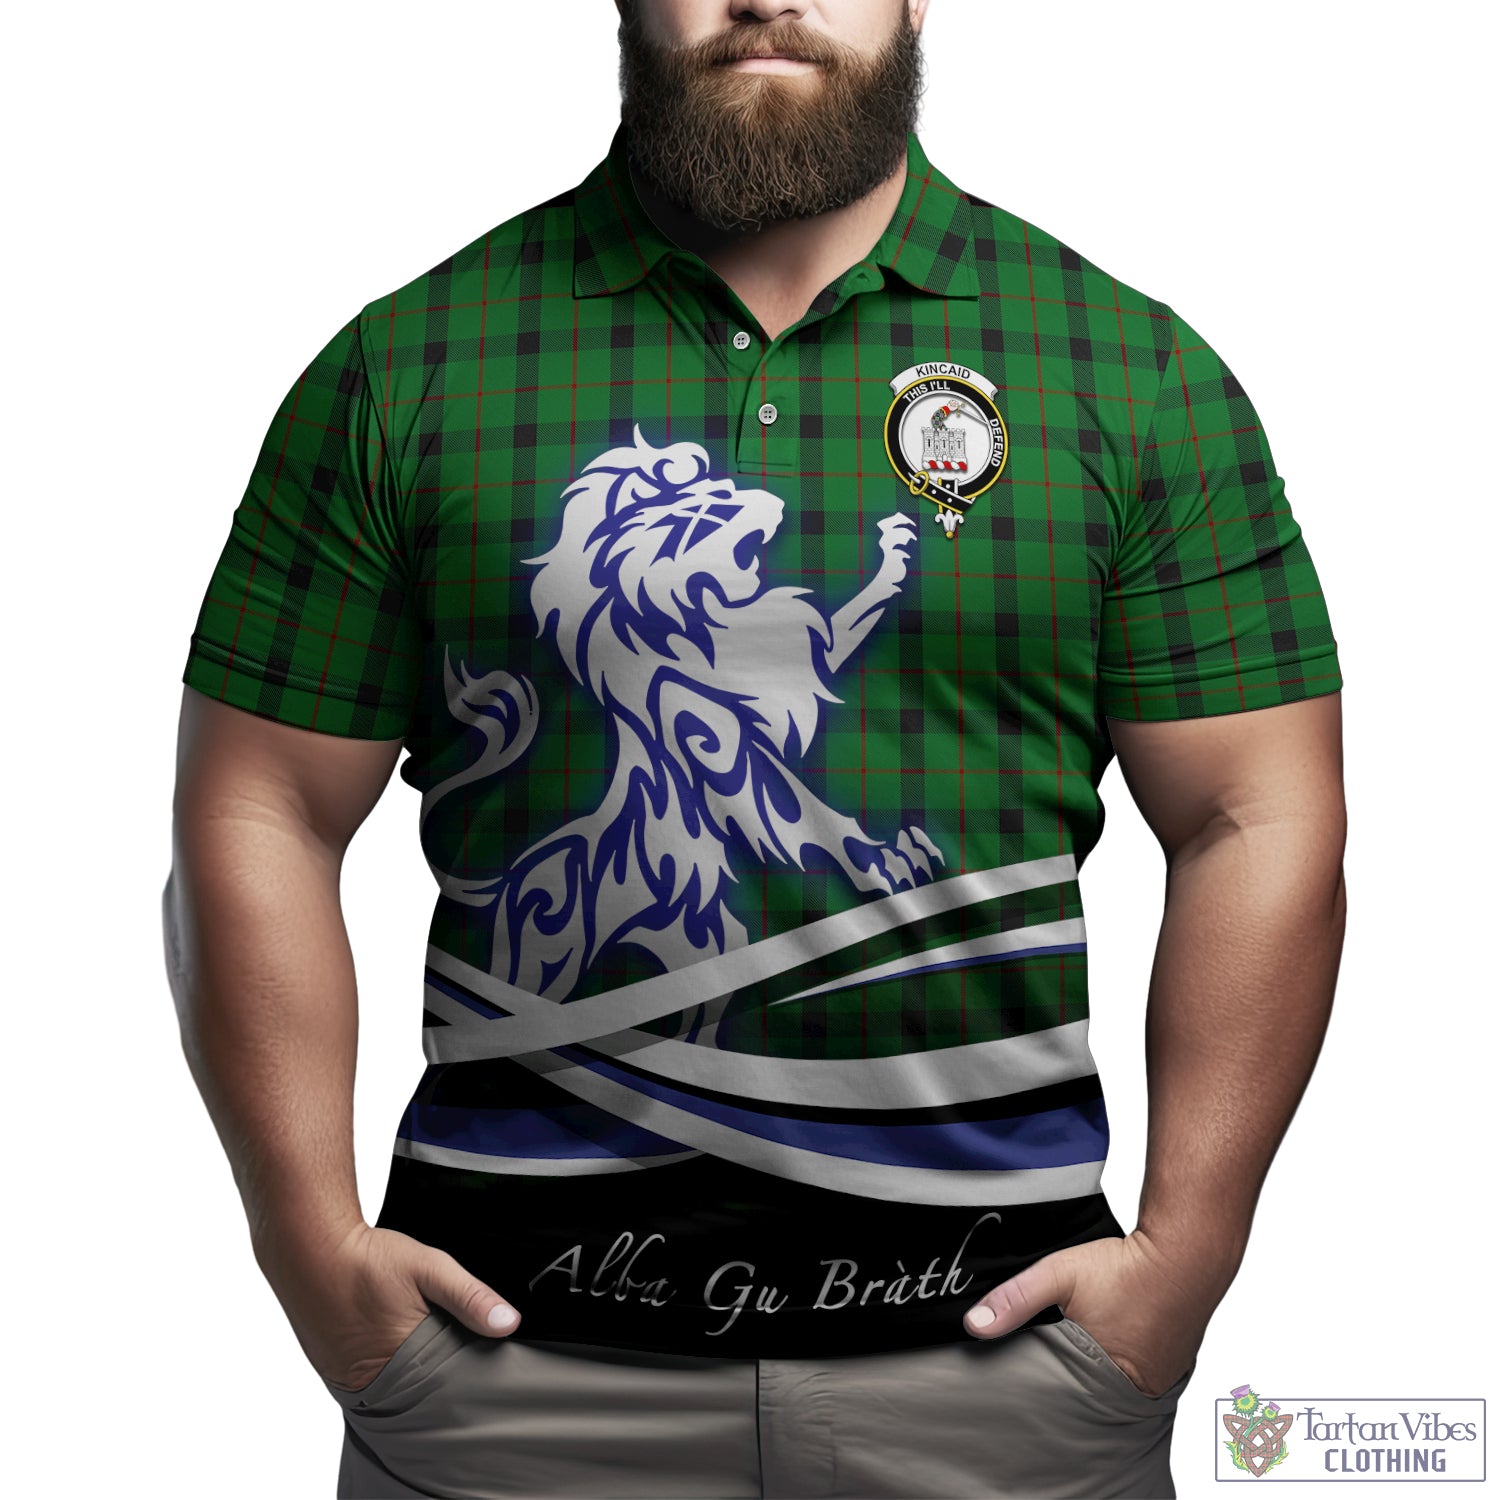 kincaid-tartan-polo-shirt-with-alba-gu-brath-regal-lion-emblem